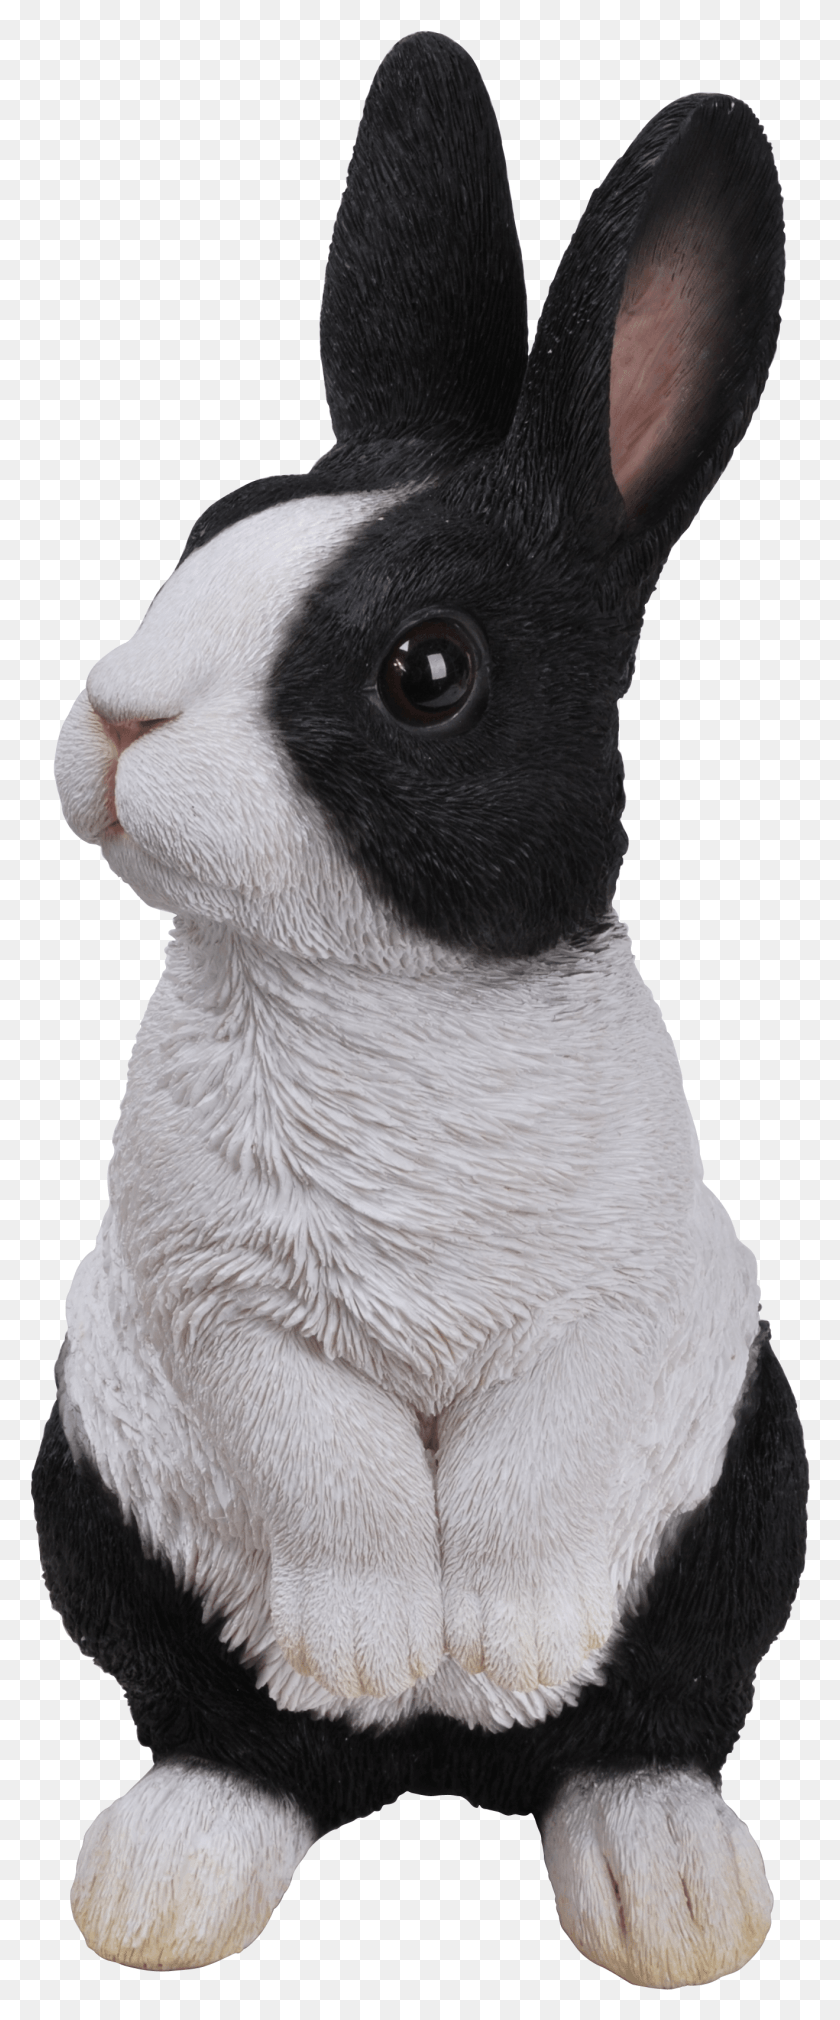 1319x3316 Голландский Кролик Голландский Кролик Голландский Кролик, Животное, Грызун, Млекопитающее Hd Png Скачать